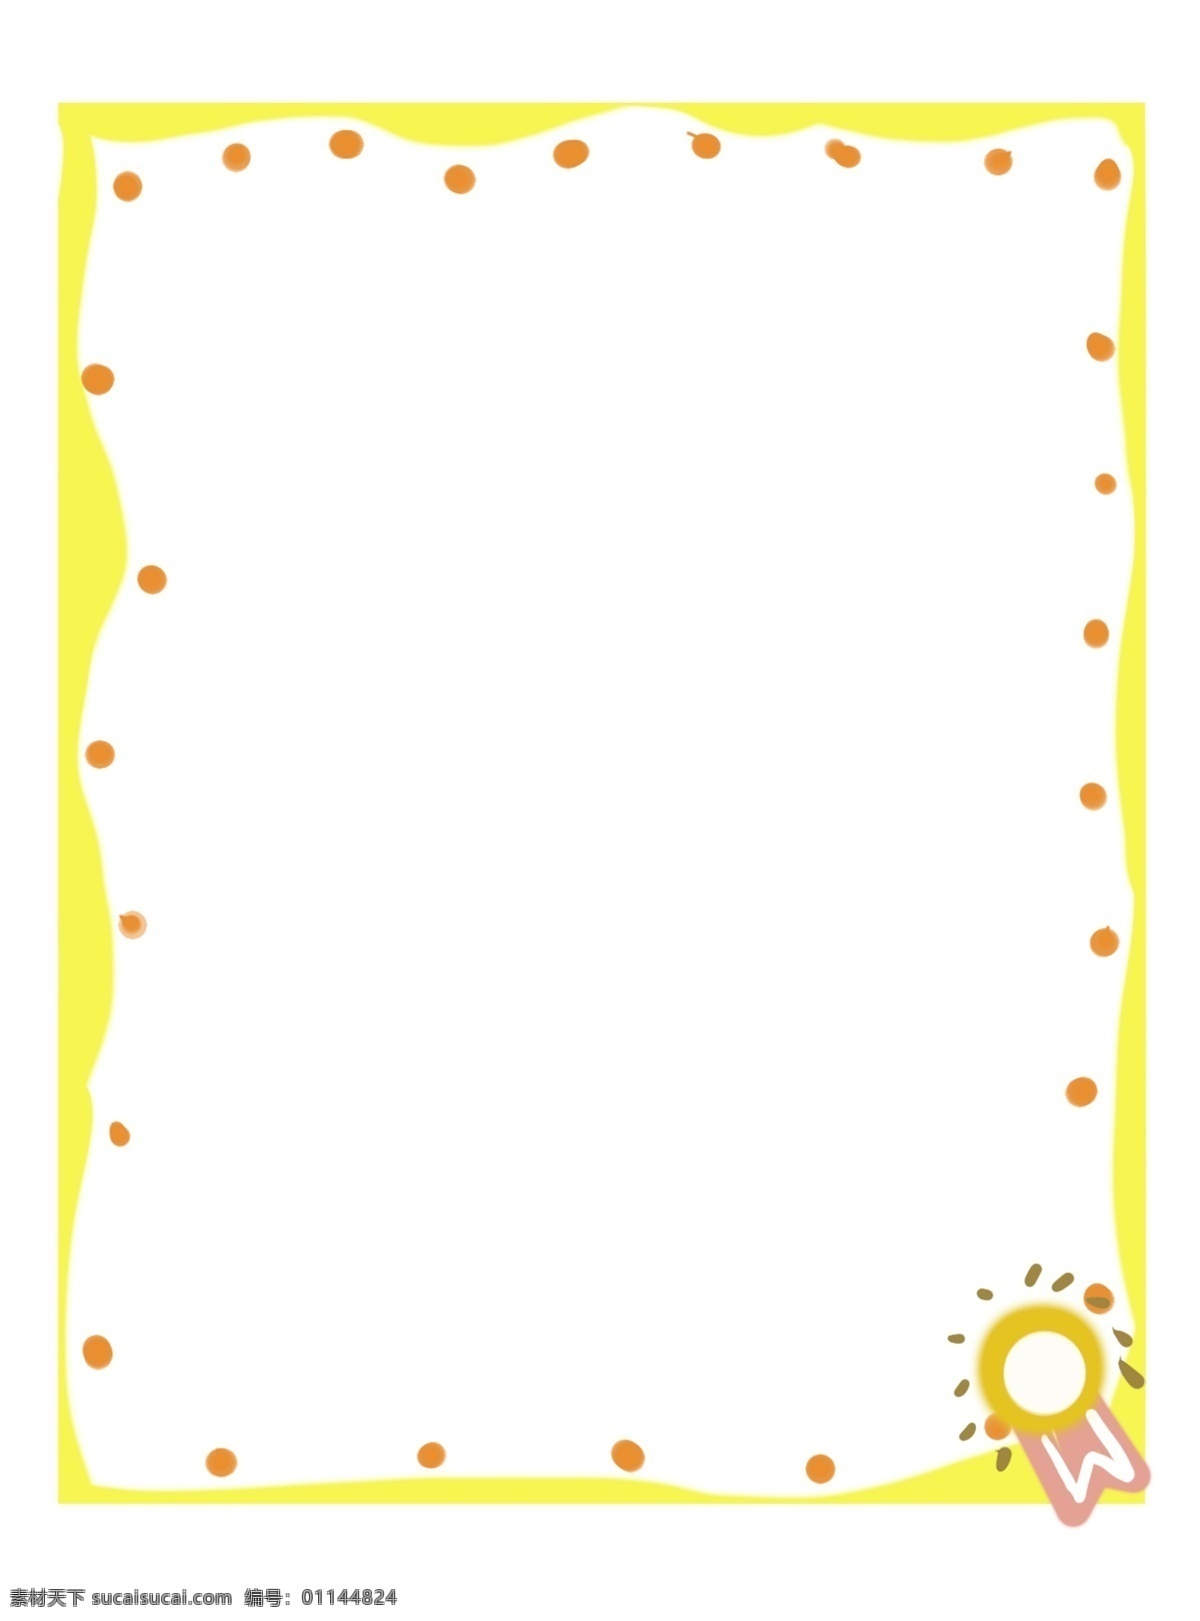 黄色 立体 边框 插图 橙色圆点 黄色边框 立体边框 图案装饰 卡通边框 漂亮的边框 简约的边框